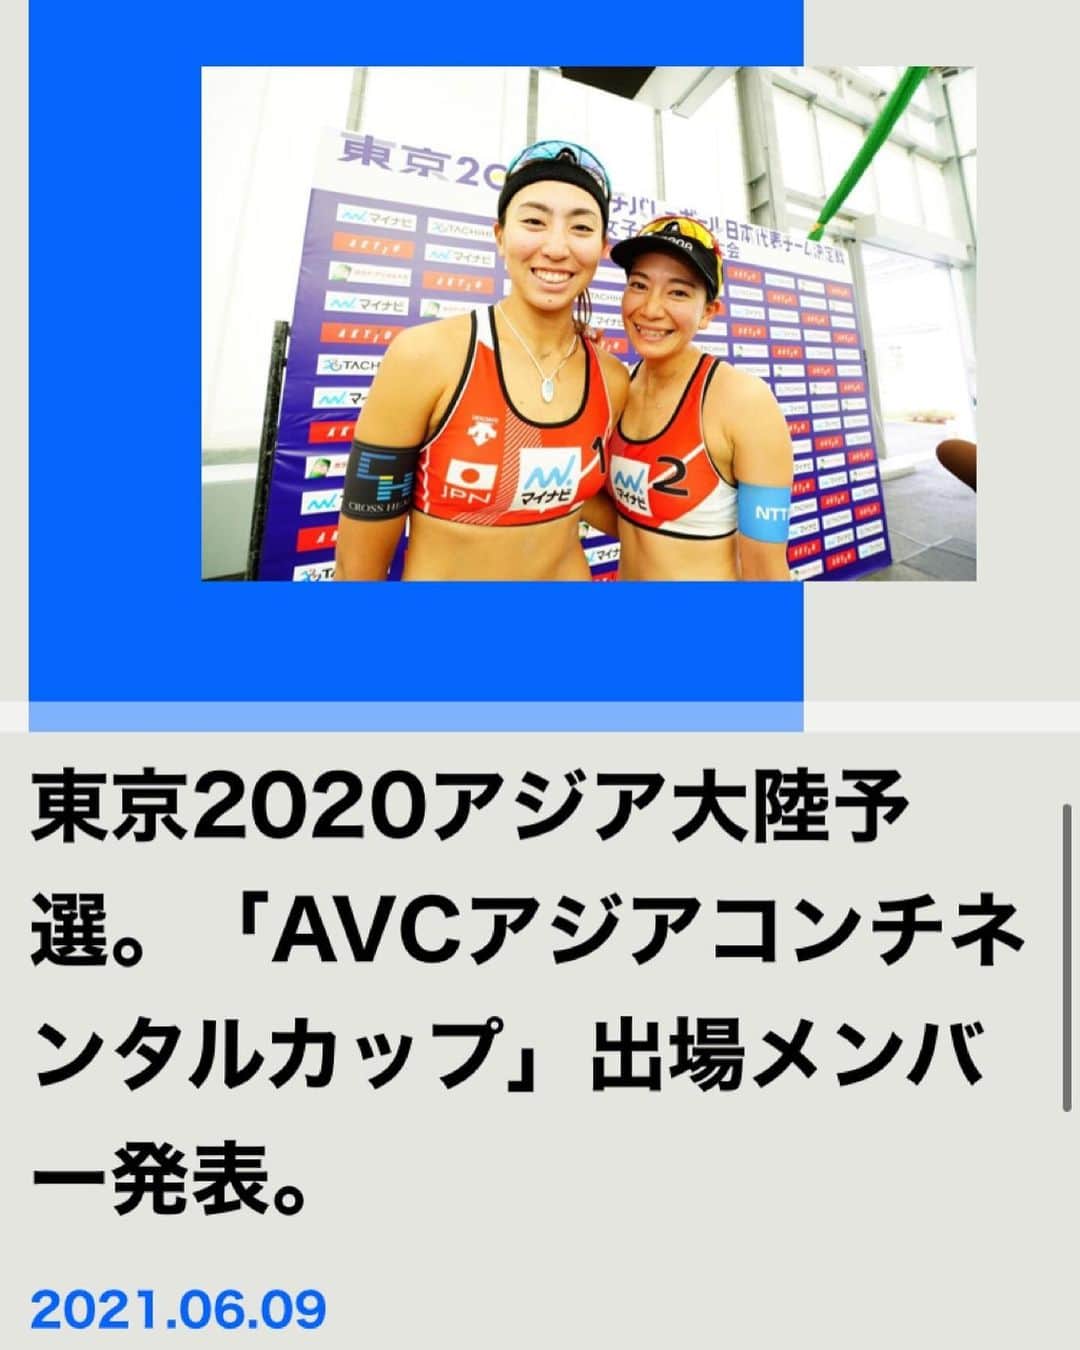 鈴木千代のインスタグラム：「2020東京オリンピック日本代表決定戦から3週間が経とうとしております。 試合後は沢山の方から温かいメッセージを頂き、負けはしましたが ここまでビーチバレーを続けてきて本当に良かったなと感じる事が出来ましたし 代表決定戦に出場した6チームそれぞれのチームの想いやこれまでの道のりなど色々な事を考えると いちビーチバレーファンとして客観的に見ても本当に込み上げてくるものがありました。  私たち鈴木/坂口ペアの東京オリンピックへの道は終わった…  と思っておりましたが！ 代表決定戦終了後に女子監督である 川合庶さんより「鈴木/坂口ペアをAVCコンチネンタルカップへ選出したい」とお話頂きました。  コンチネンタルカップとは 【オリンピックアジア大陸予選】という大会です。  今回選出された第2フェーズで日本が優勝し、最終フェーズでも優勝した場合 アジア大陸枠として日本チームに東京オリンピックの出場権が与えられます。  つまり、道はまだ続いているのです！  もちろん険しい道のりになるかと思いますが、気持ちを新たに もう一度東京オリンピックに向けて 闘ってきたいと思います😊  14日にタイに向けて出発します🇹🇭  皆様最後まで応援よろしくお願い致します⭐ 色々な事に気をつけて行ってきます！  ◻️コンチネンタルカップ日程 ・6月18日〜19日 コンチネンタルカップ第2フェーズ ・6月25日〜27日 コンチネンタルカップ最終フェーズ ・場所 タイ/ナコンパトム Nakhonpathom Sport School」